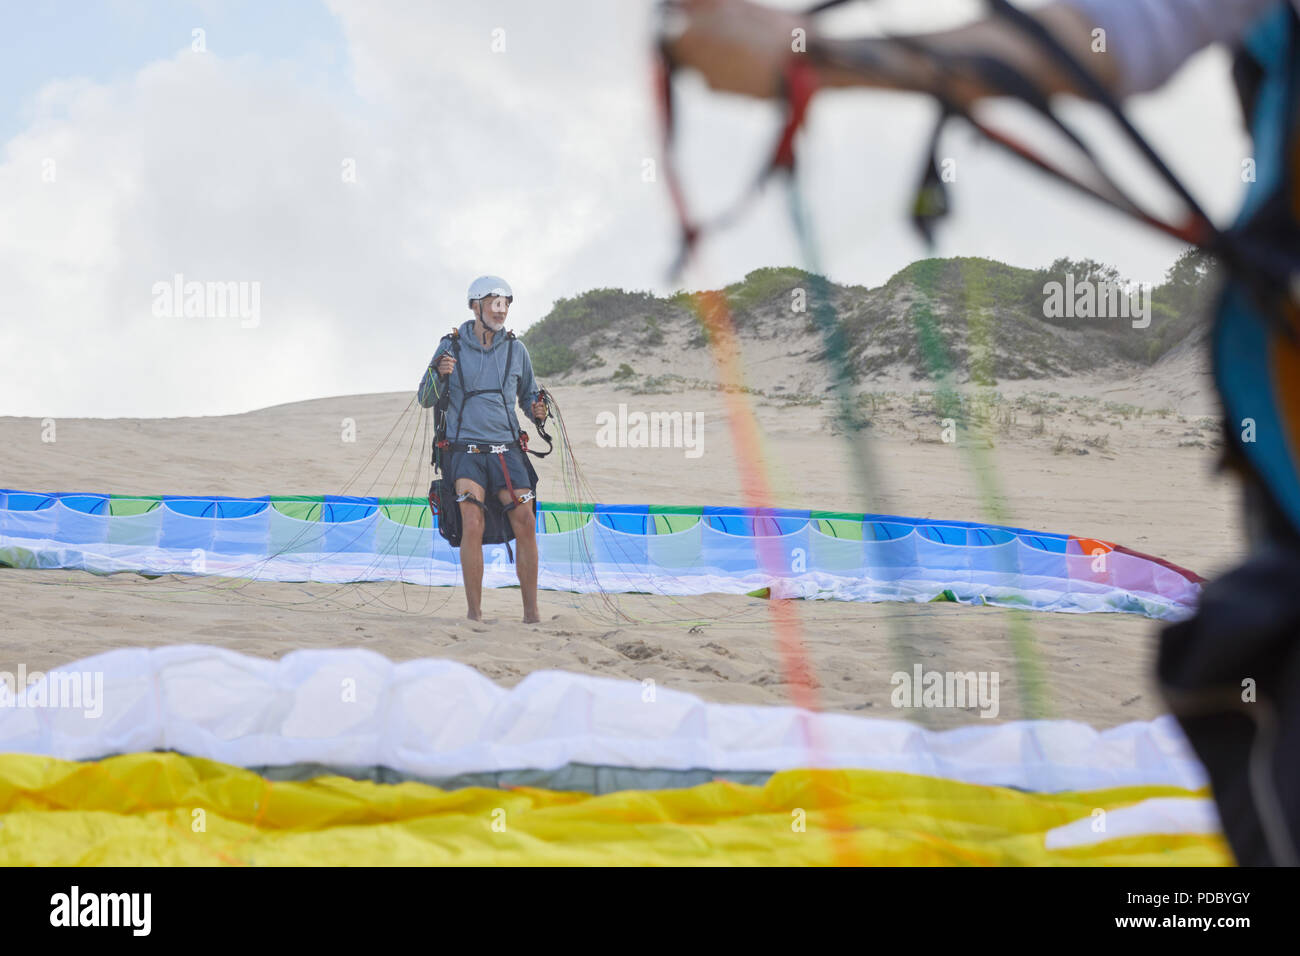 Macho parapente con paracaídas en la playa Foto de stock